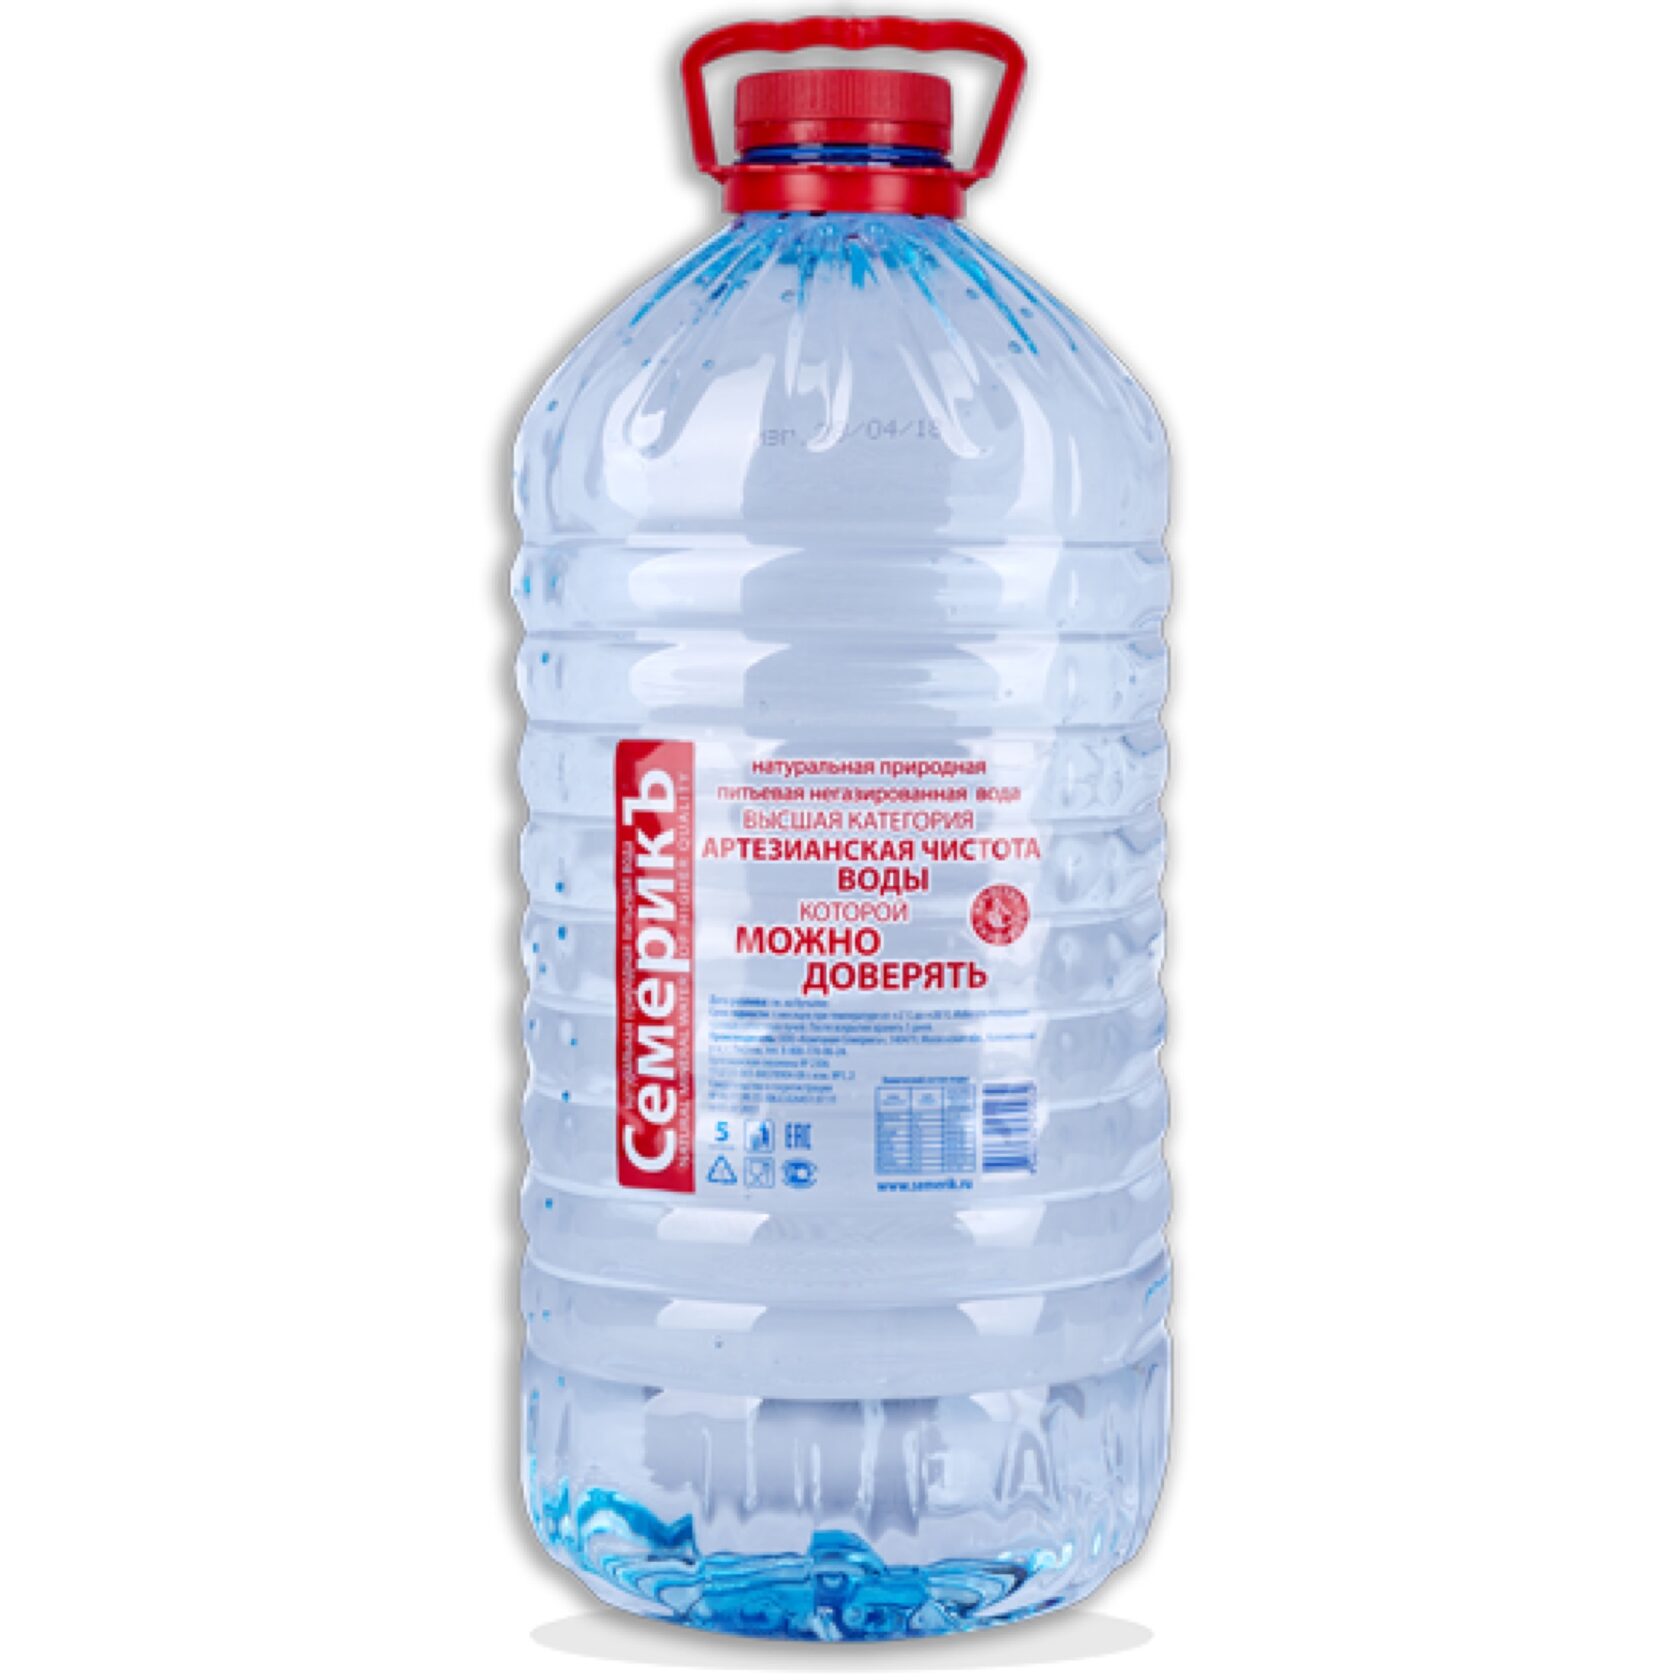 Доставка воды 5л. Семерик вода питьевая 5л. Вода питьевая 5л ТМ "Аквастарт". Вода семерик 1,5. Вода питьевая негазированная 5л.